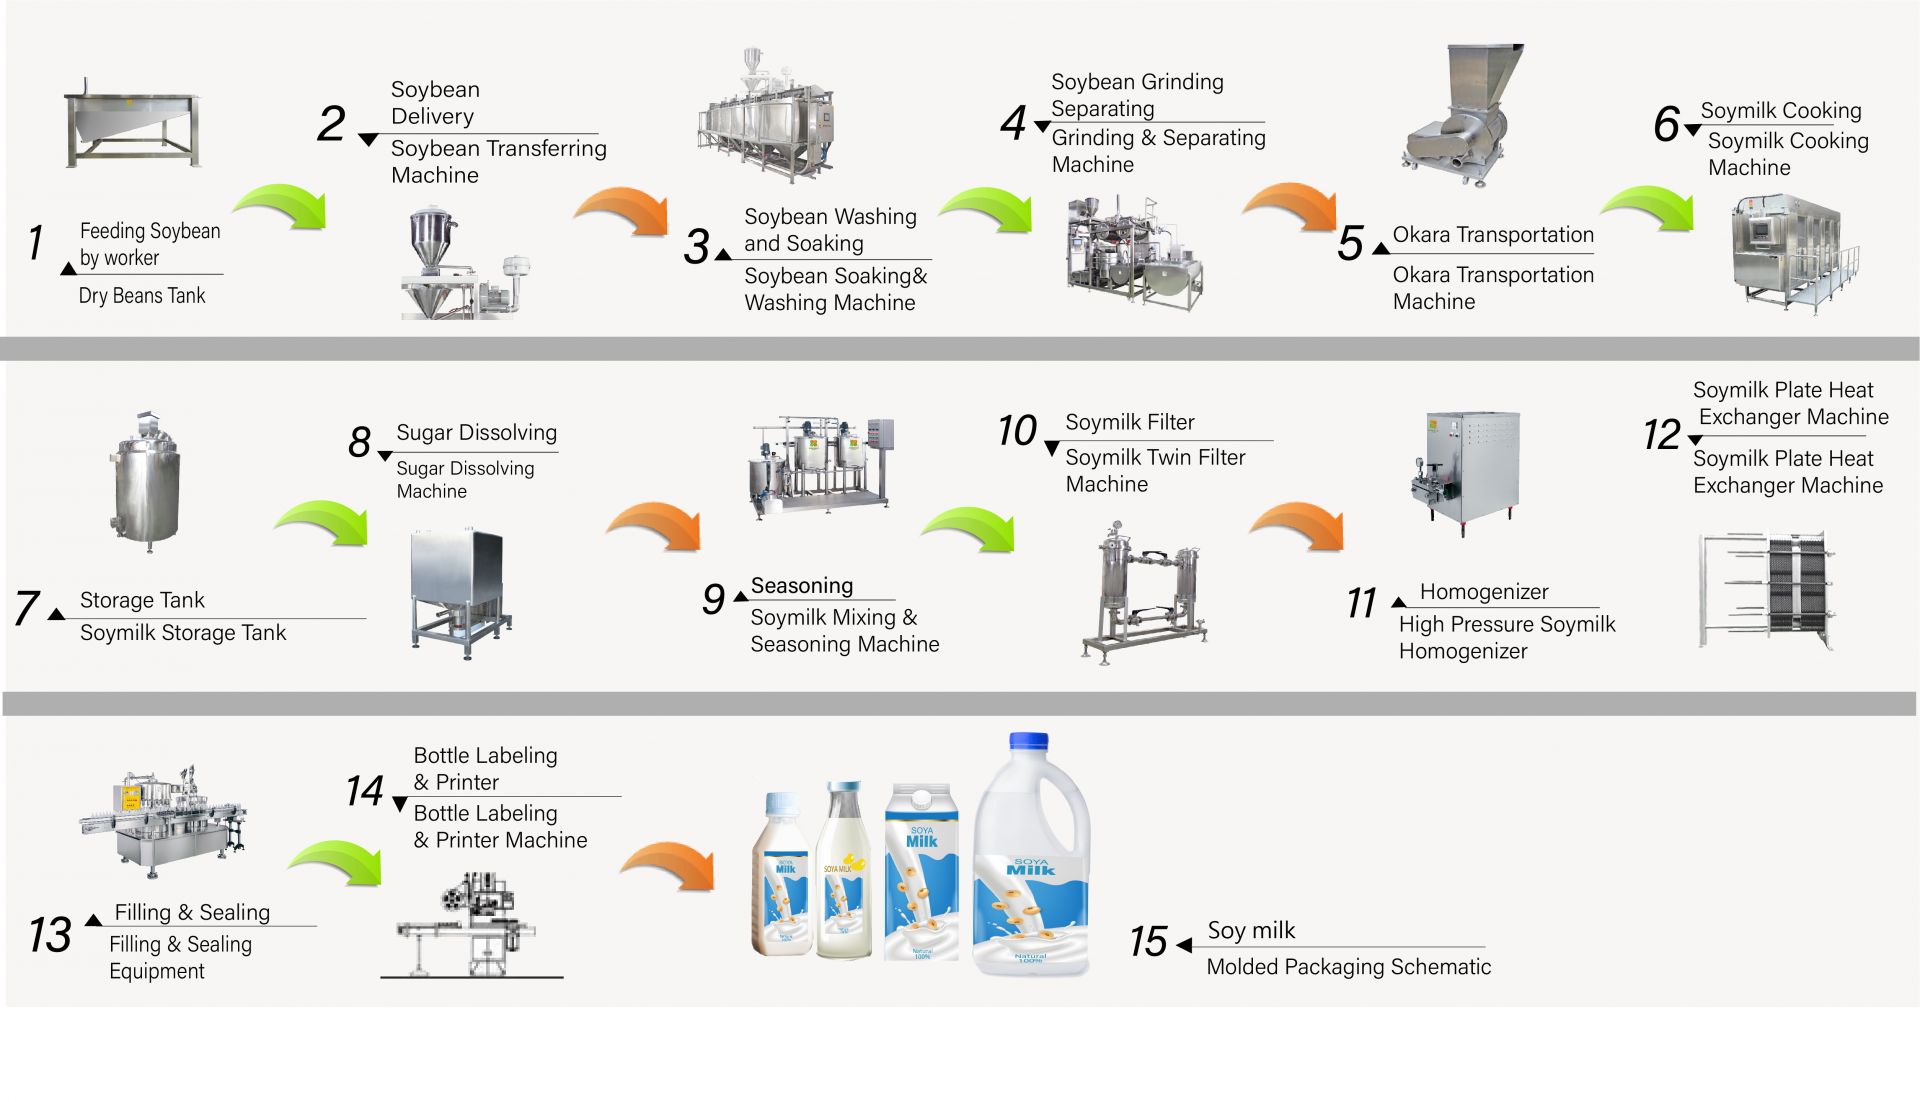 Postopek izdelave sojinega mleka v tovarni, Kako narediti sojino mleko, Proizvodnja sojinega mleka, diagram pretoka sojinega mleka, Postopek izdelave sojinega mleka, Proces proizvodnje sojinega mleka, postopek izdelave sojinega mleka, diagram pretoka procesa sojinega mleka, Pretok procesa izdelave sojinega mleka, Proces obdelave sojinega mleka, proizvodnja sojinega mleka, diagram toka proizvodnje sojinega mleka, postopek proizvodnje sojinega mleka, diagram predelave soje, avtomatski stroj za sojino mleko, avtomatski stroj za izdelavo sojinega mleka, enostavni izdelovalec tofuja, industrijska proizvodnja sojinega mleka, industrijska proizvodnja sojinega mleka, industrijski stroj za sojino mleko, Industrijski stroj za izdelavo tofuja, stroj za rastlinsko mleko, stroj za proizvodnjo rastlinskega mleka, proizvodnja sojinega mleka, stroj za sojine napitke, proizvodna linija za sojine napitke, stroj za sojine napitke, komercialni stroj za izdelavo sojinega mleka in tofuja, stroj za izdelavo sojinega mleka in tofuja, oprema in stroji za sojine napitke, Stroj za kuhanje sojinega mleka, sojina mlečna tovarna, komercialni stroj za sojino mleko, Stroj za sojino mleko izdelan na Tajvanu, Stroji za sojino mleko, Stroji in oprema za sojino mleko, Izdelovalec sojinega mleka, Stroj za izdelavo sojinega mleka, Proizvajalci sojinega mleka, Proizvodnja sojinega mleka, oprema za proizvodnjo sojinega mleka, tovarna za proizvodnjo sojinega mleka, proizvodna linija za sojino mleko, cena stroja za izdelavo sojinega mleka, stroj za predelavo soje, tovarna za sojino mleko, stroj za sojino mleko